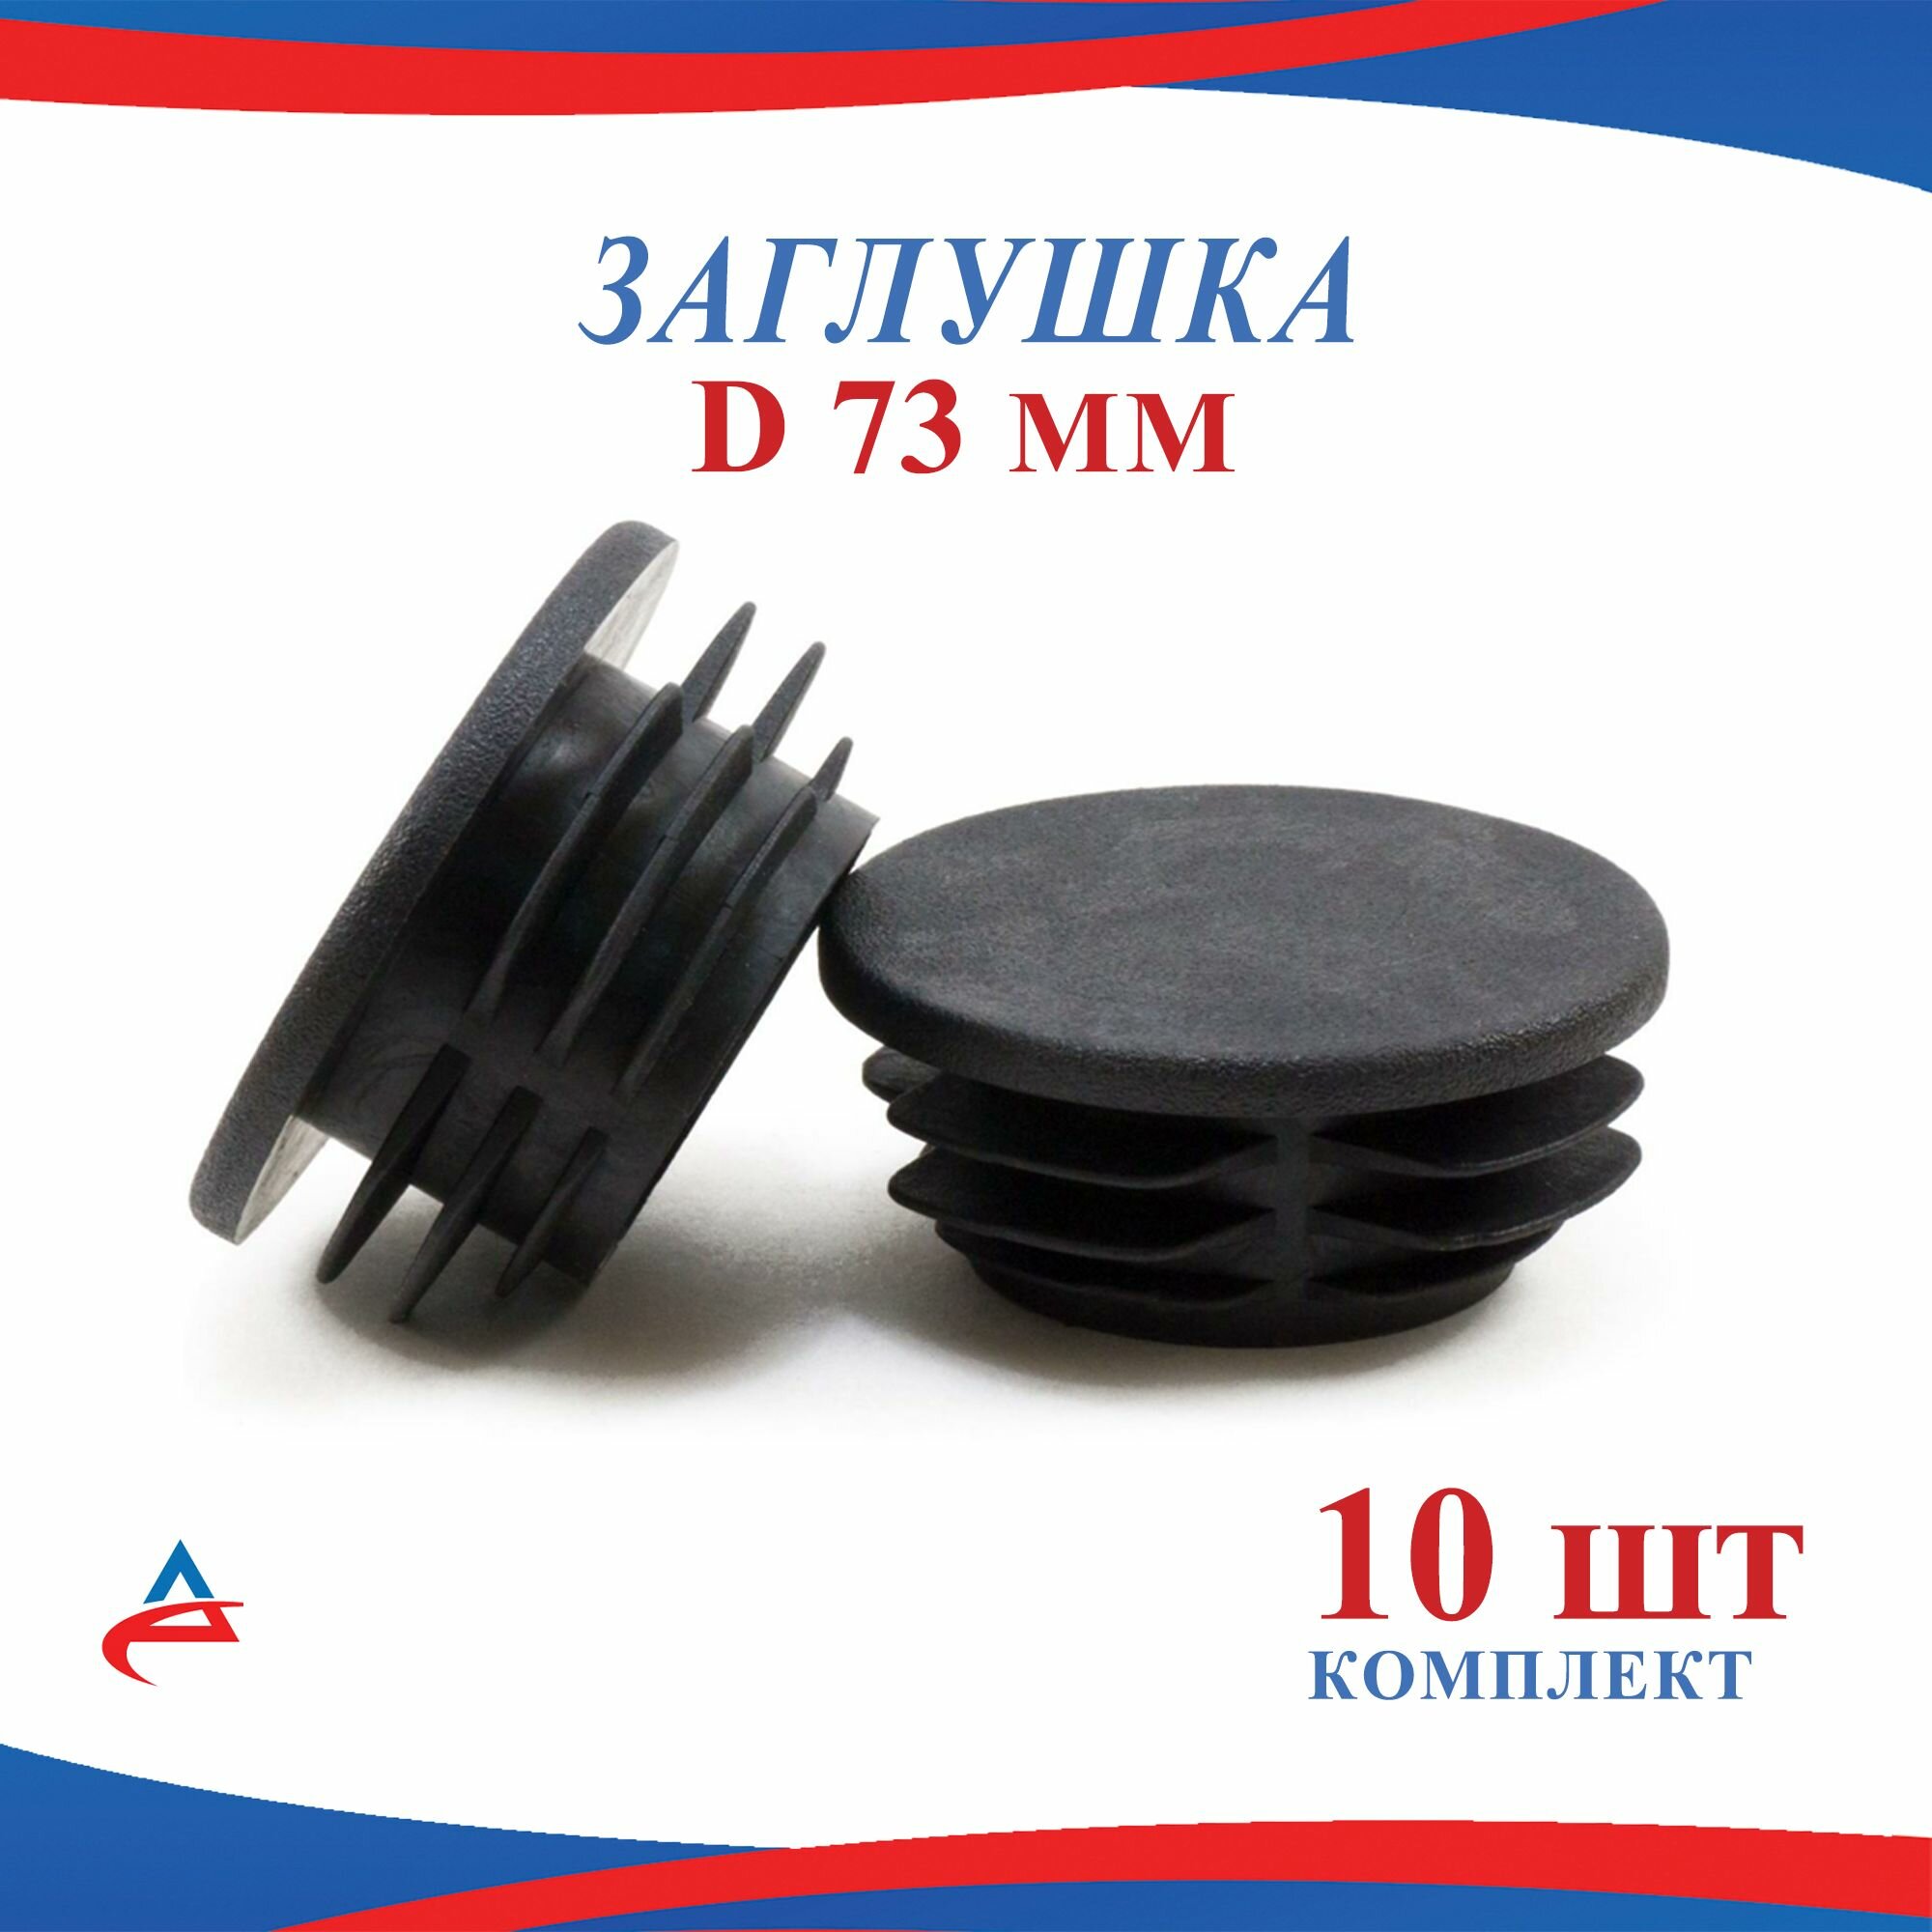 Заглушка Д 73 мм пластиковая круглая для труб диаметр D 73 мм (10шт)